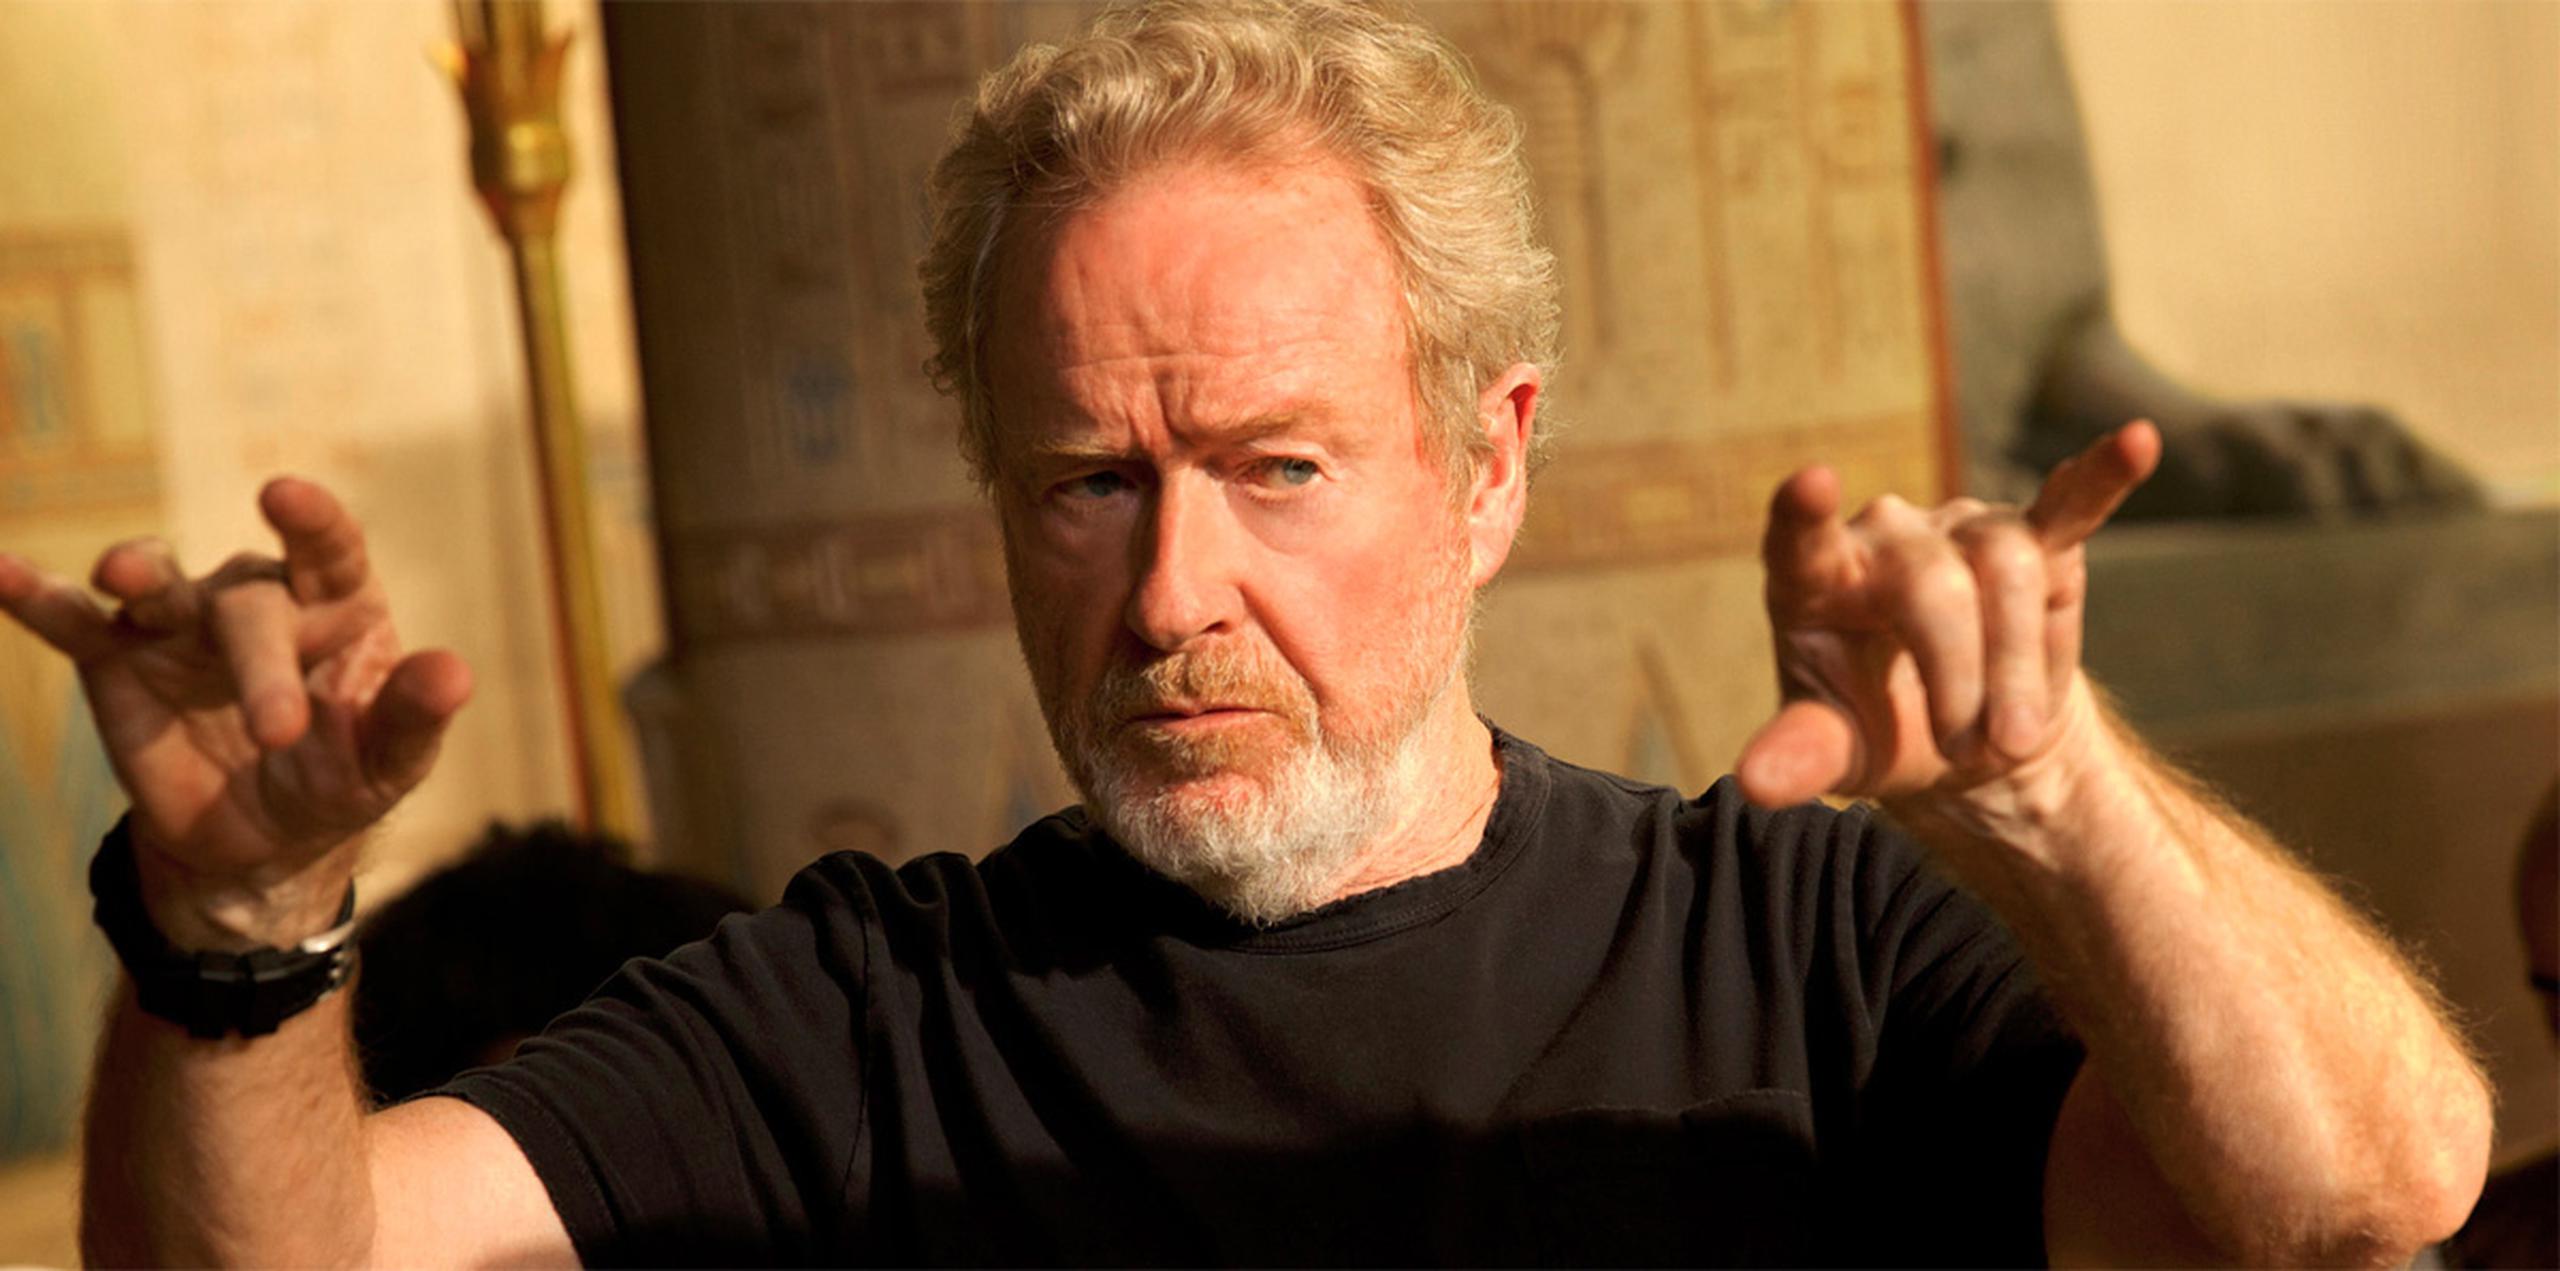 Ridley Scott, considerado como uno de los grandes directores de su generación gracias a filmes como "Blade Runner" (1982), presentará en mayo "Alien: Covenant", una nueva entrega de la famosa saga de terror y ciencia-ficción.